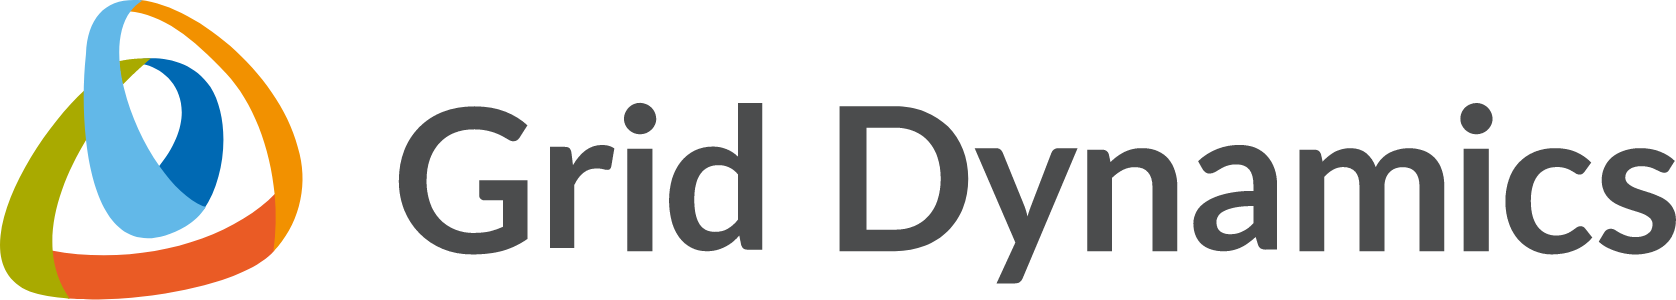 Logotipo de Grid Dynamics